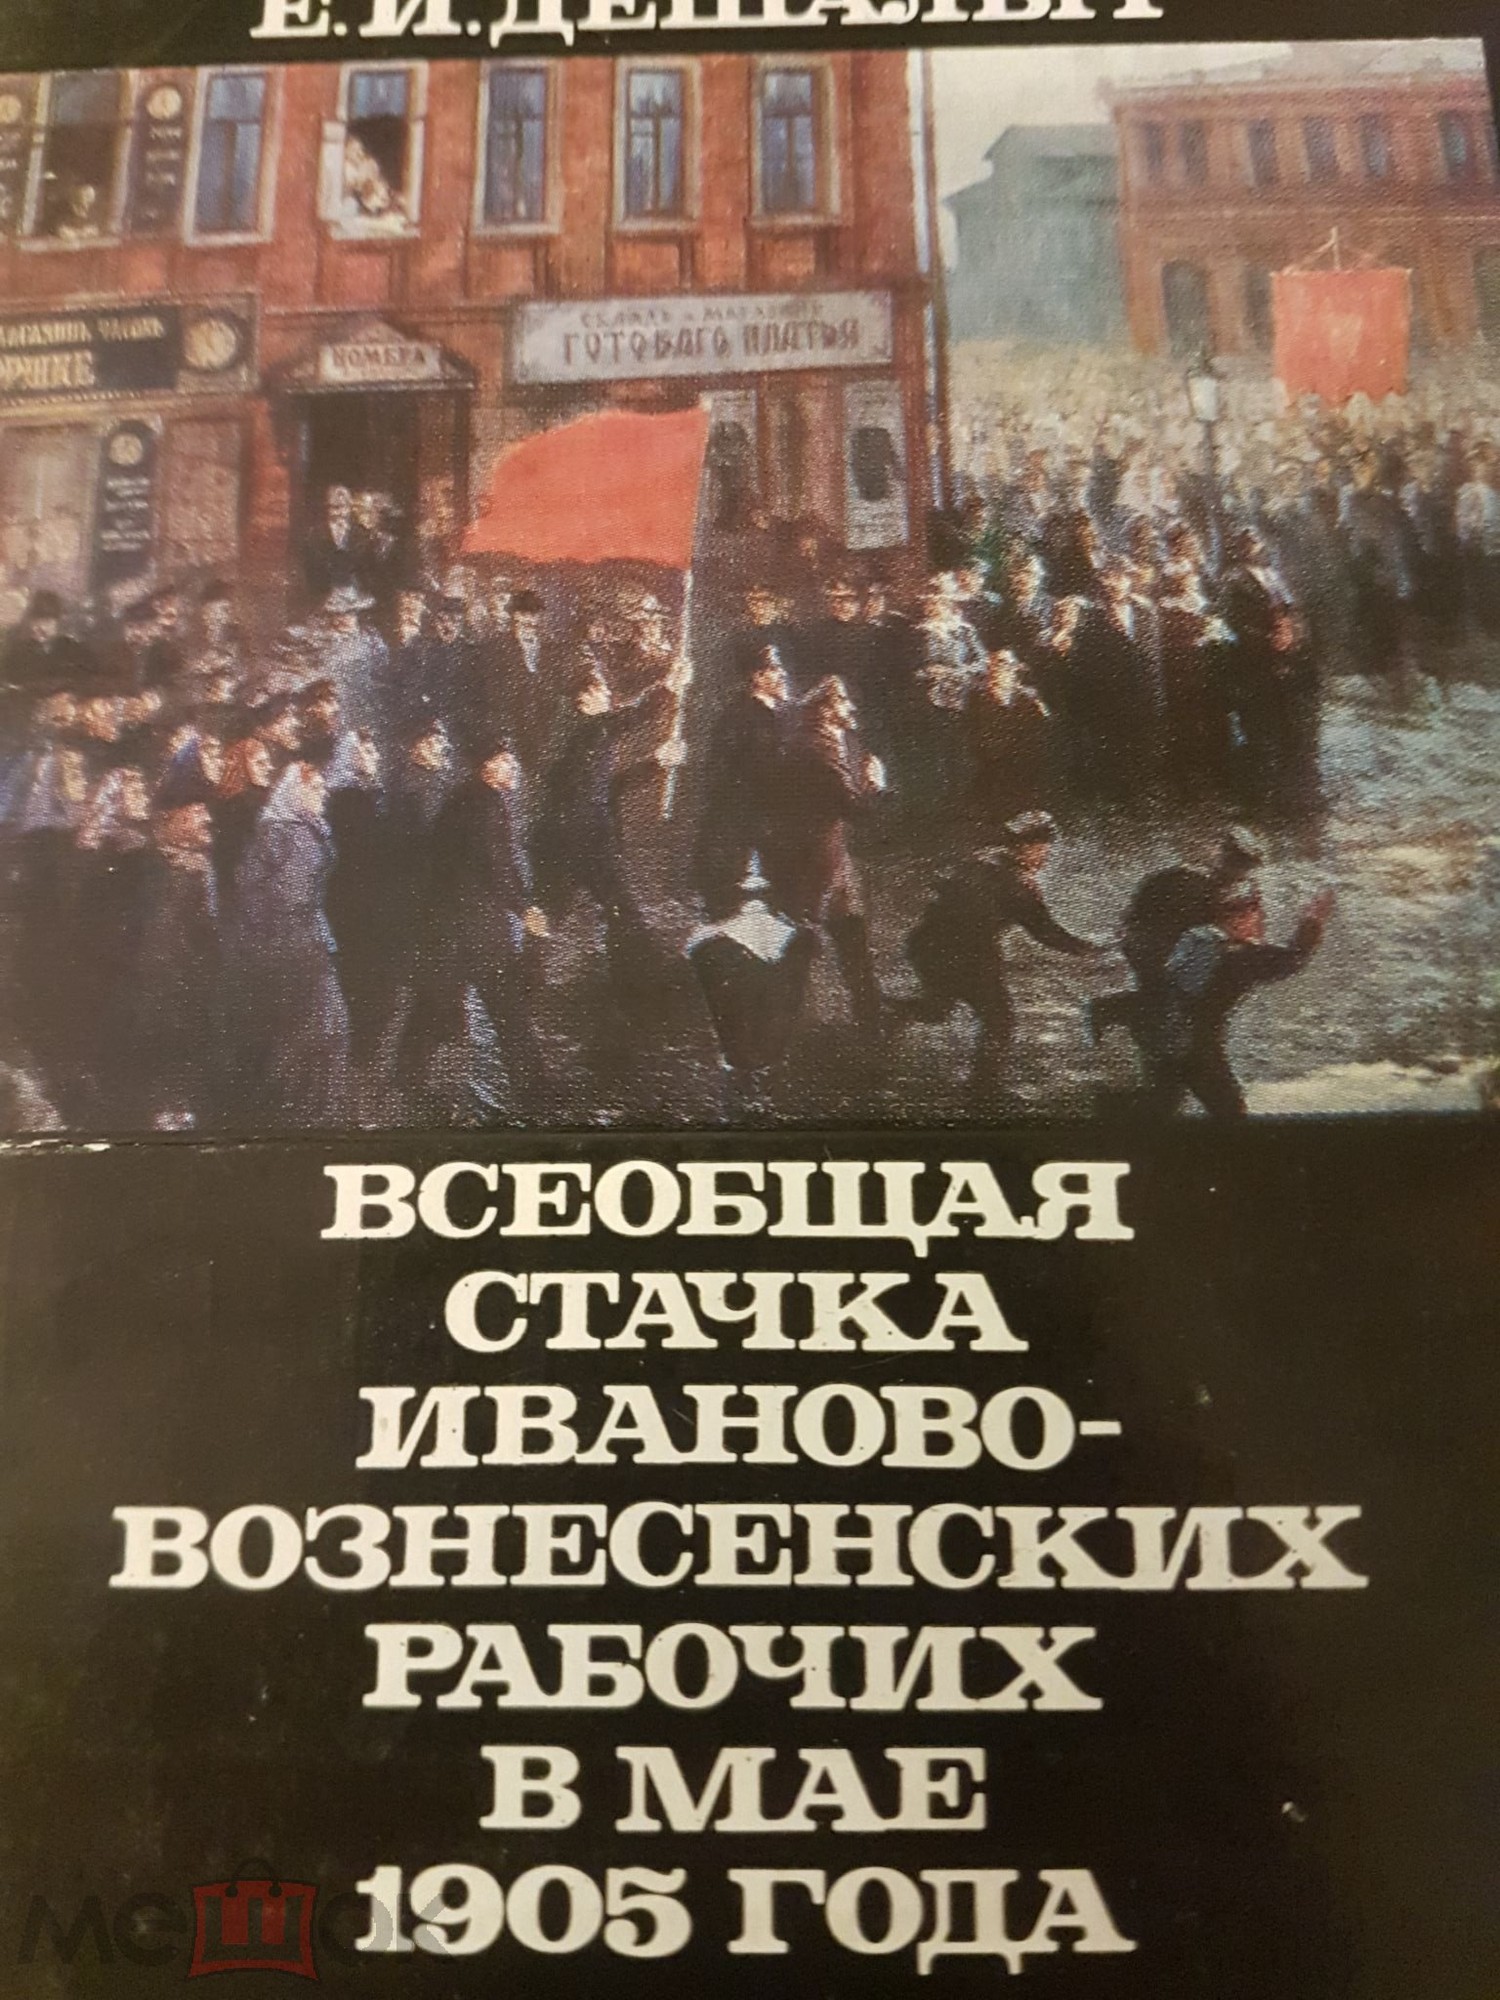 "Шел 1905 год". Приложение к комплекту открыток "Всеобщая стачка Иваново-Вознесенских рабочих в мае 1905 года"